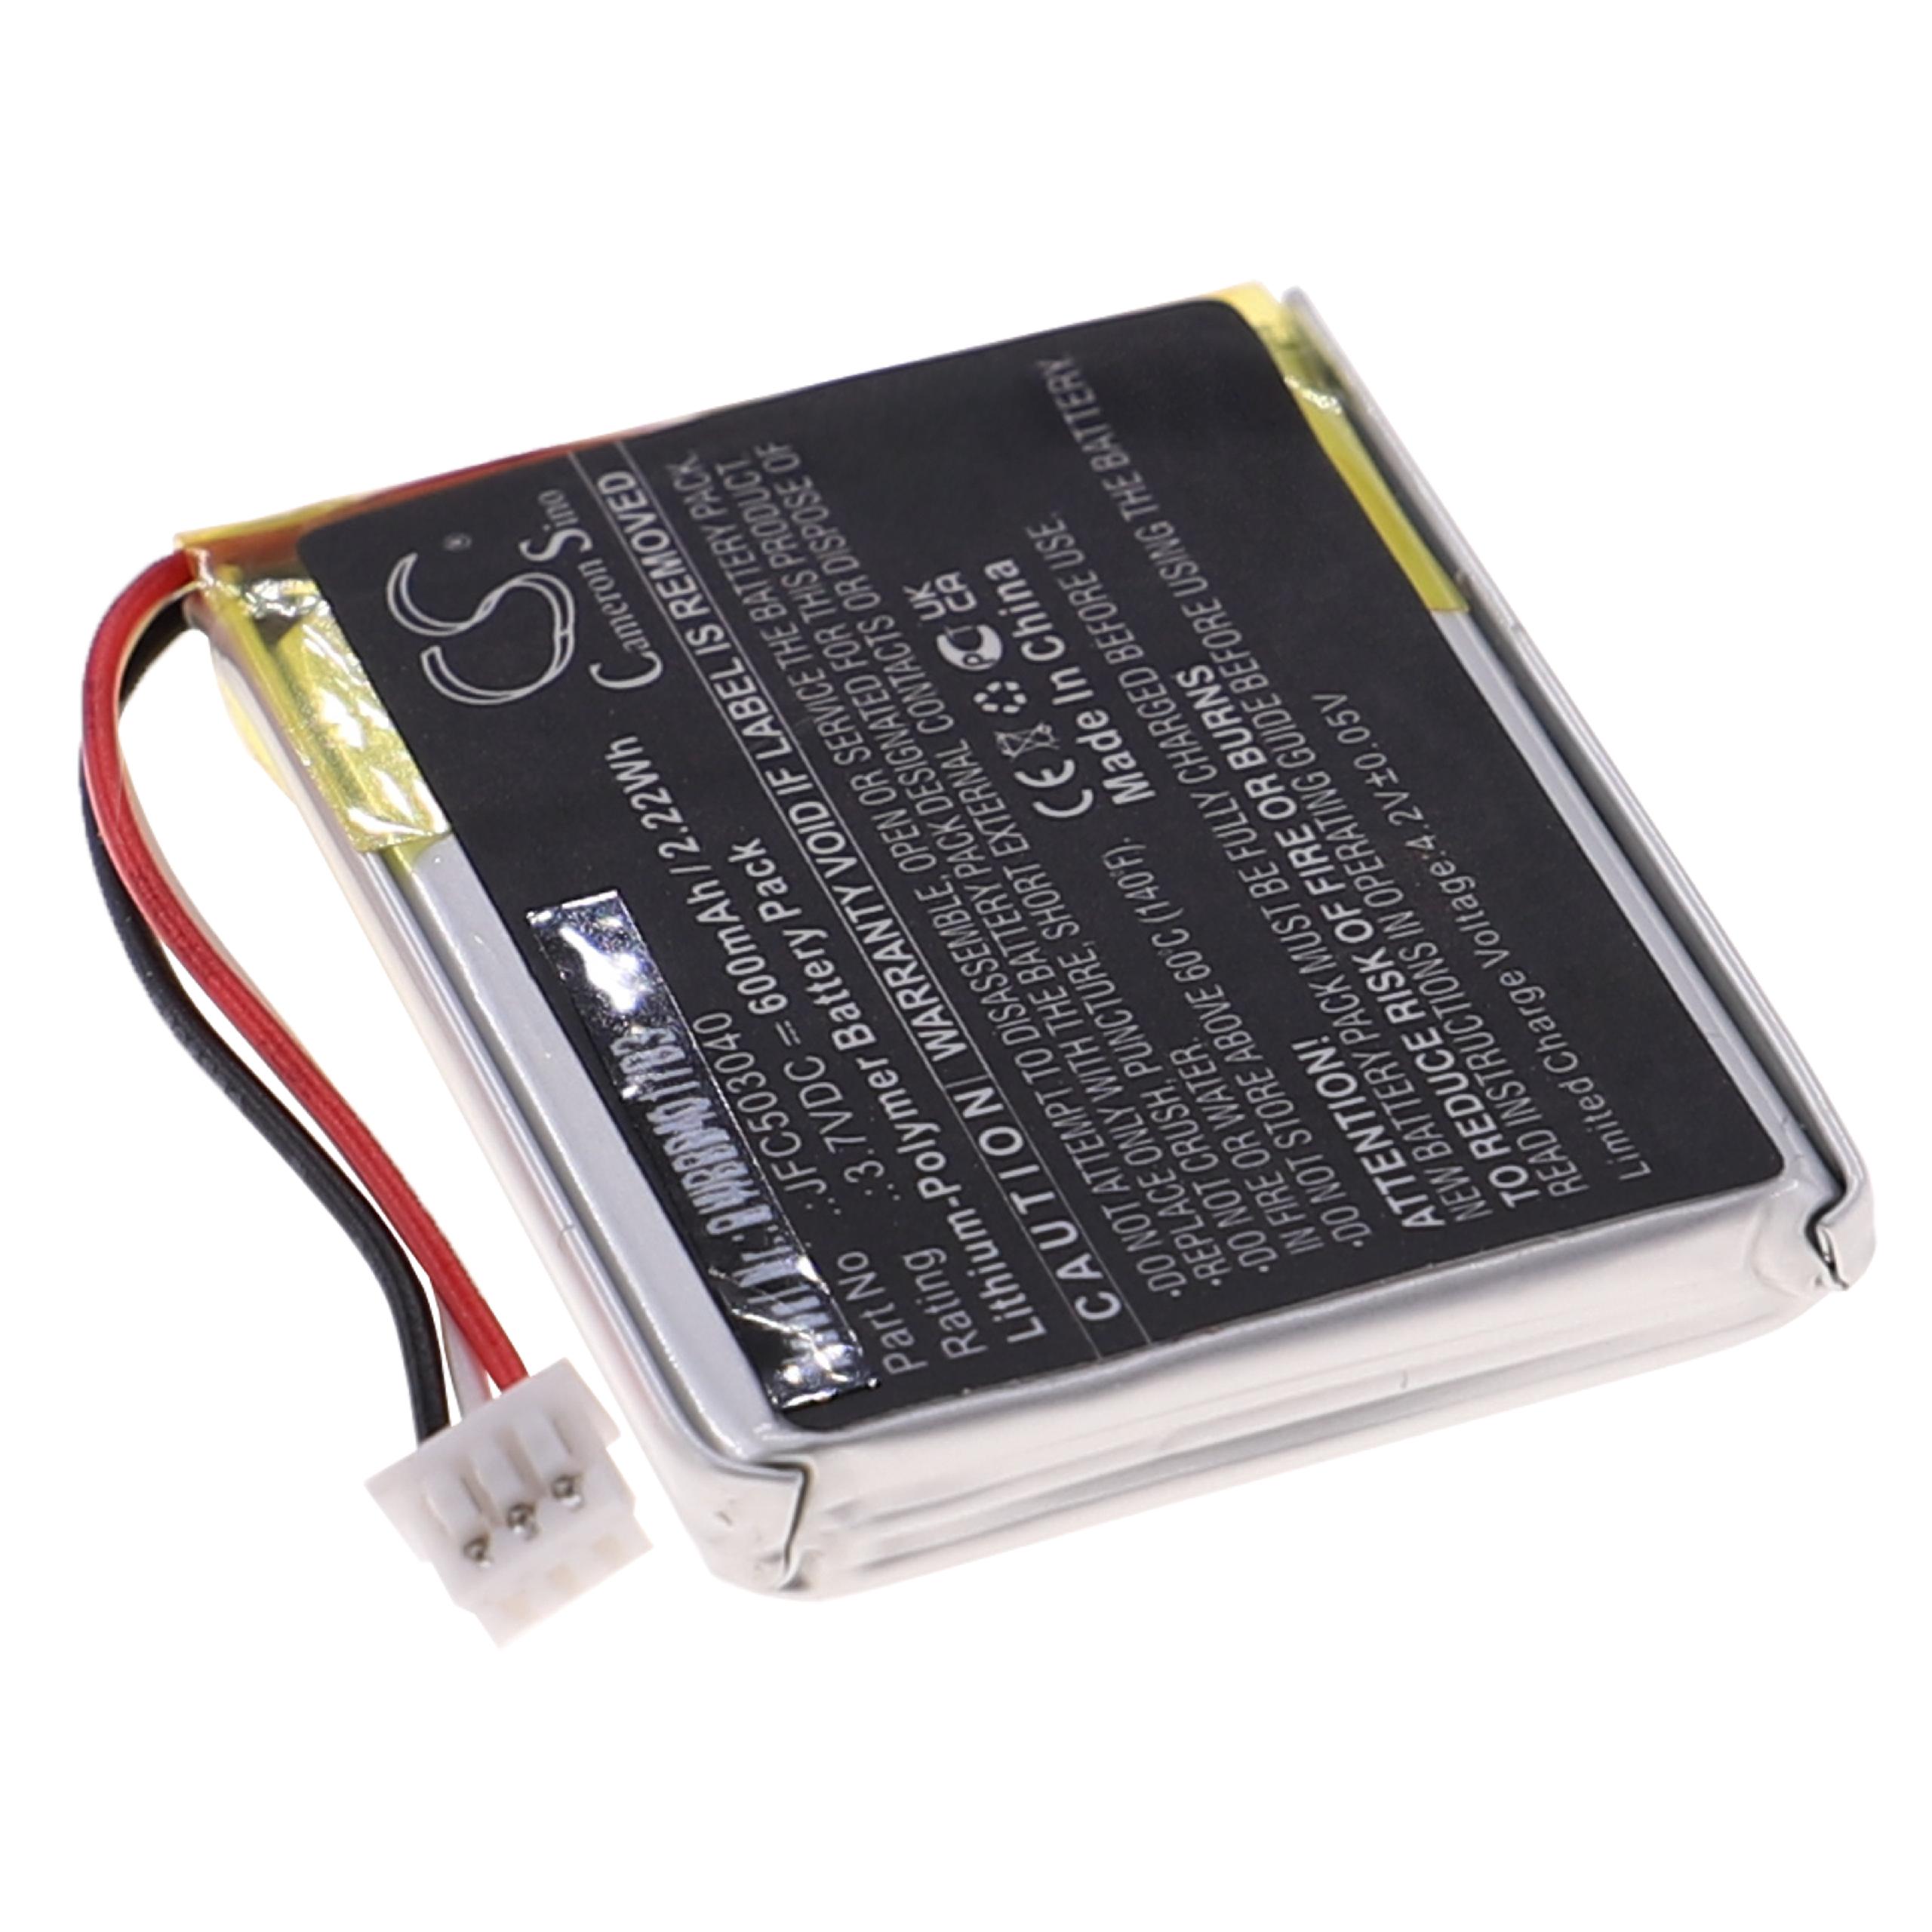 Batterie remplace Viper JFC503040 pour télécommande - 600mAh 3,7V Li-polymère